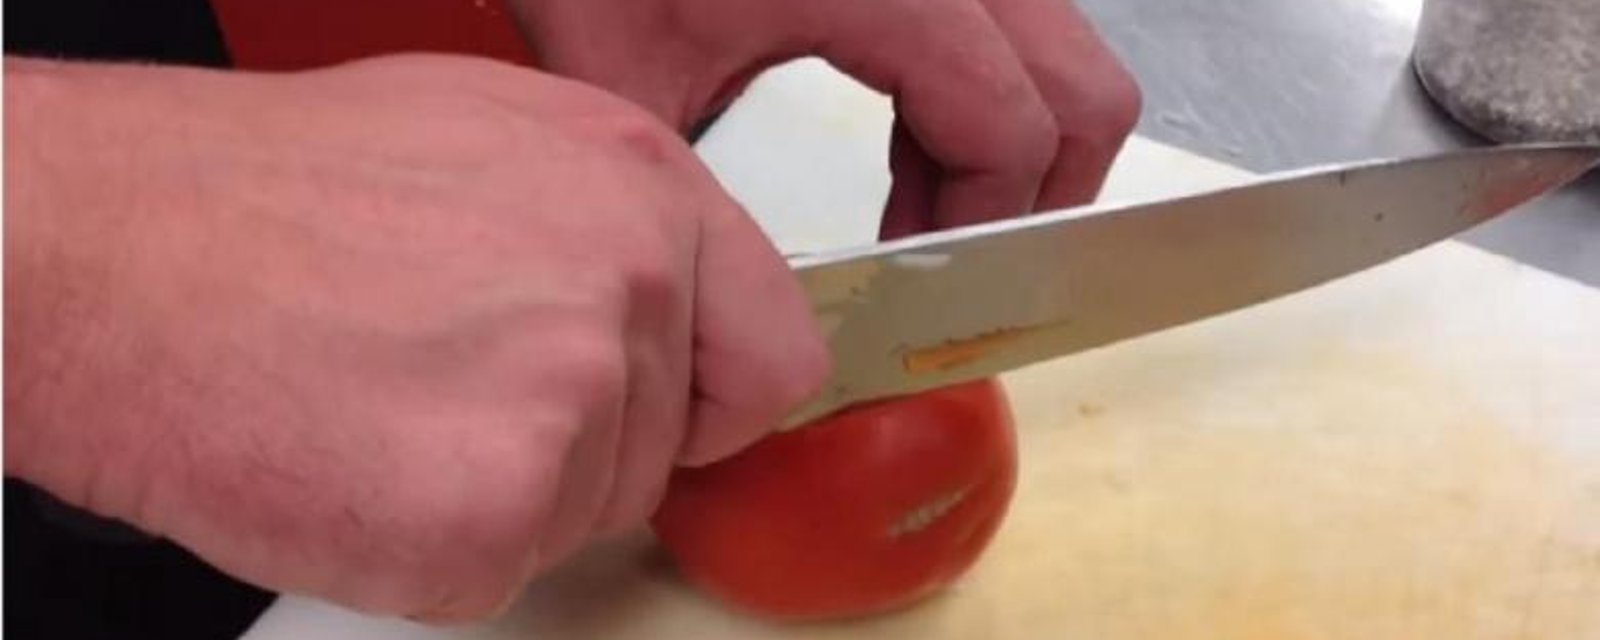 Complètement géniale cette technique pour couper des tomates en dés! 